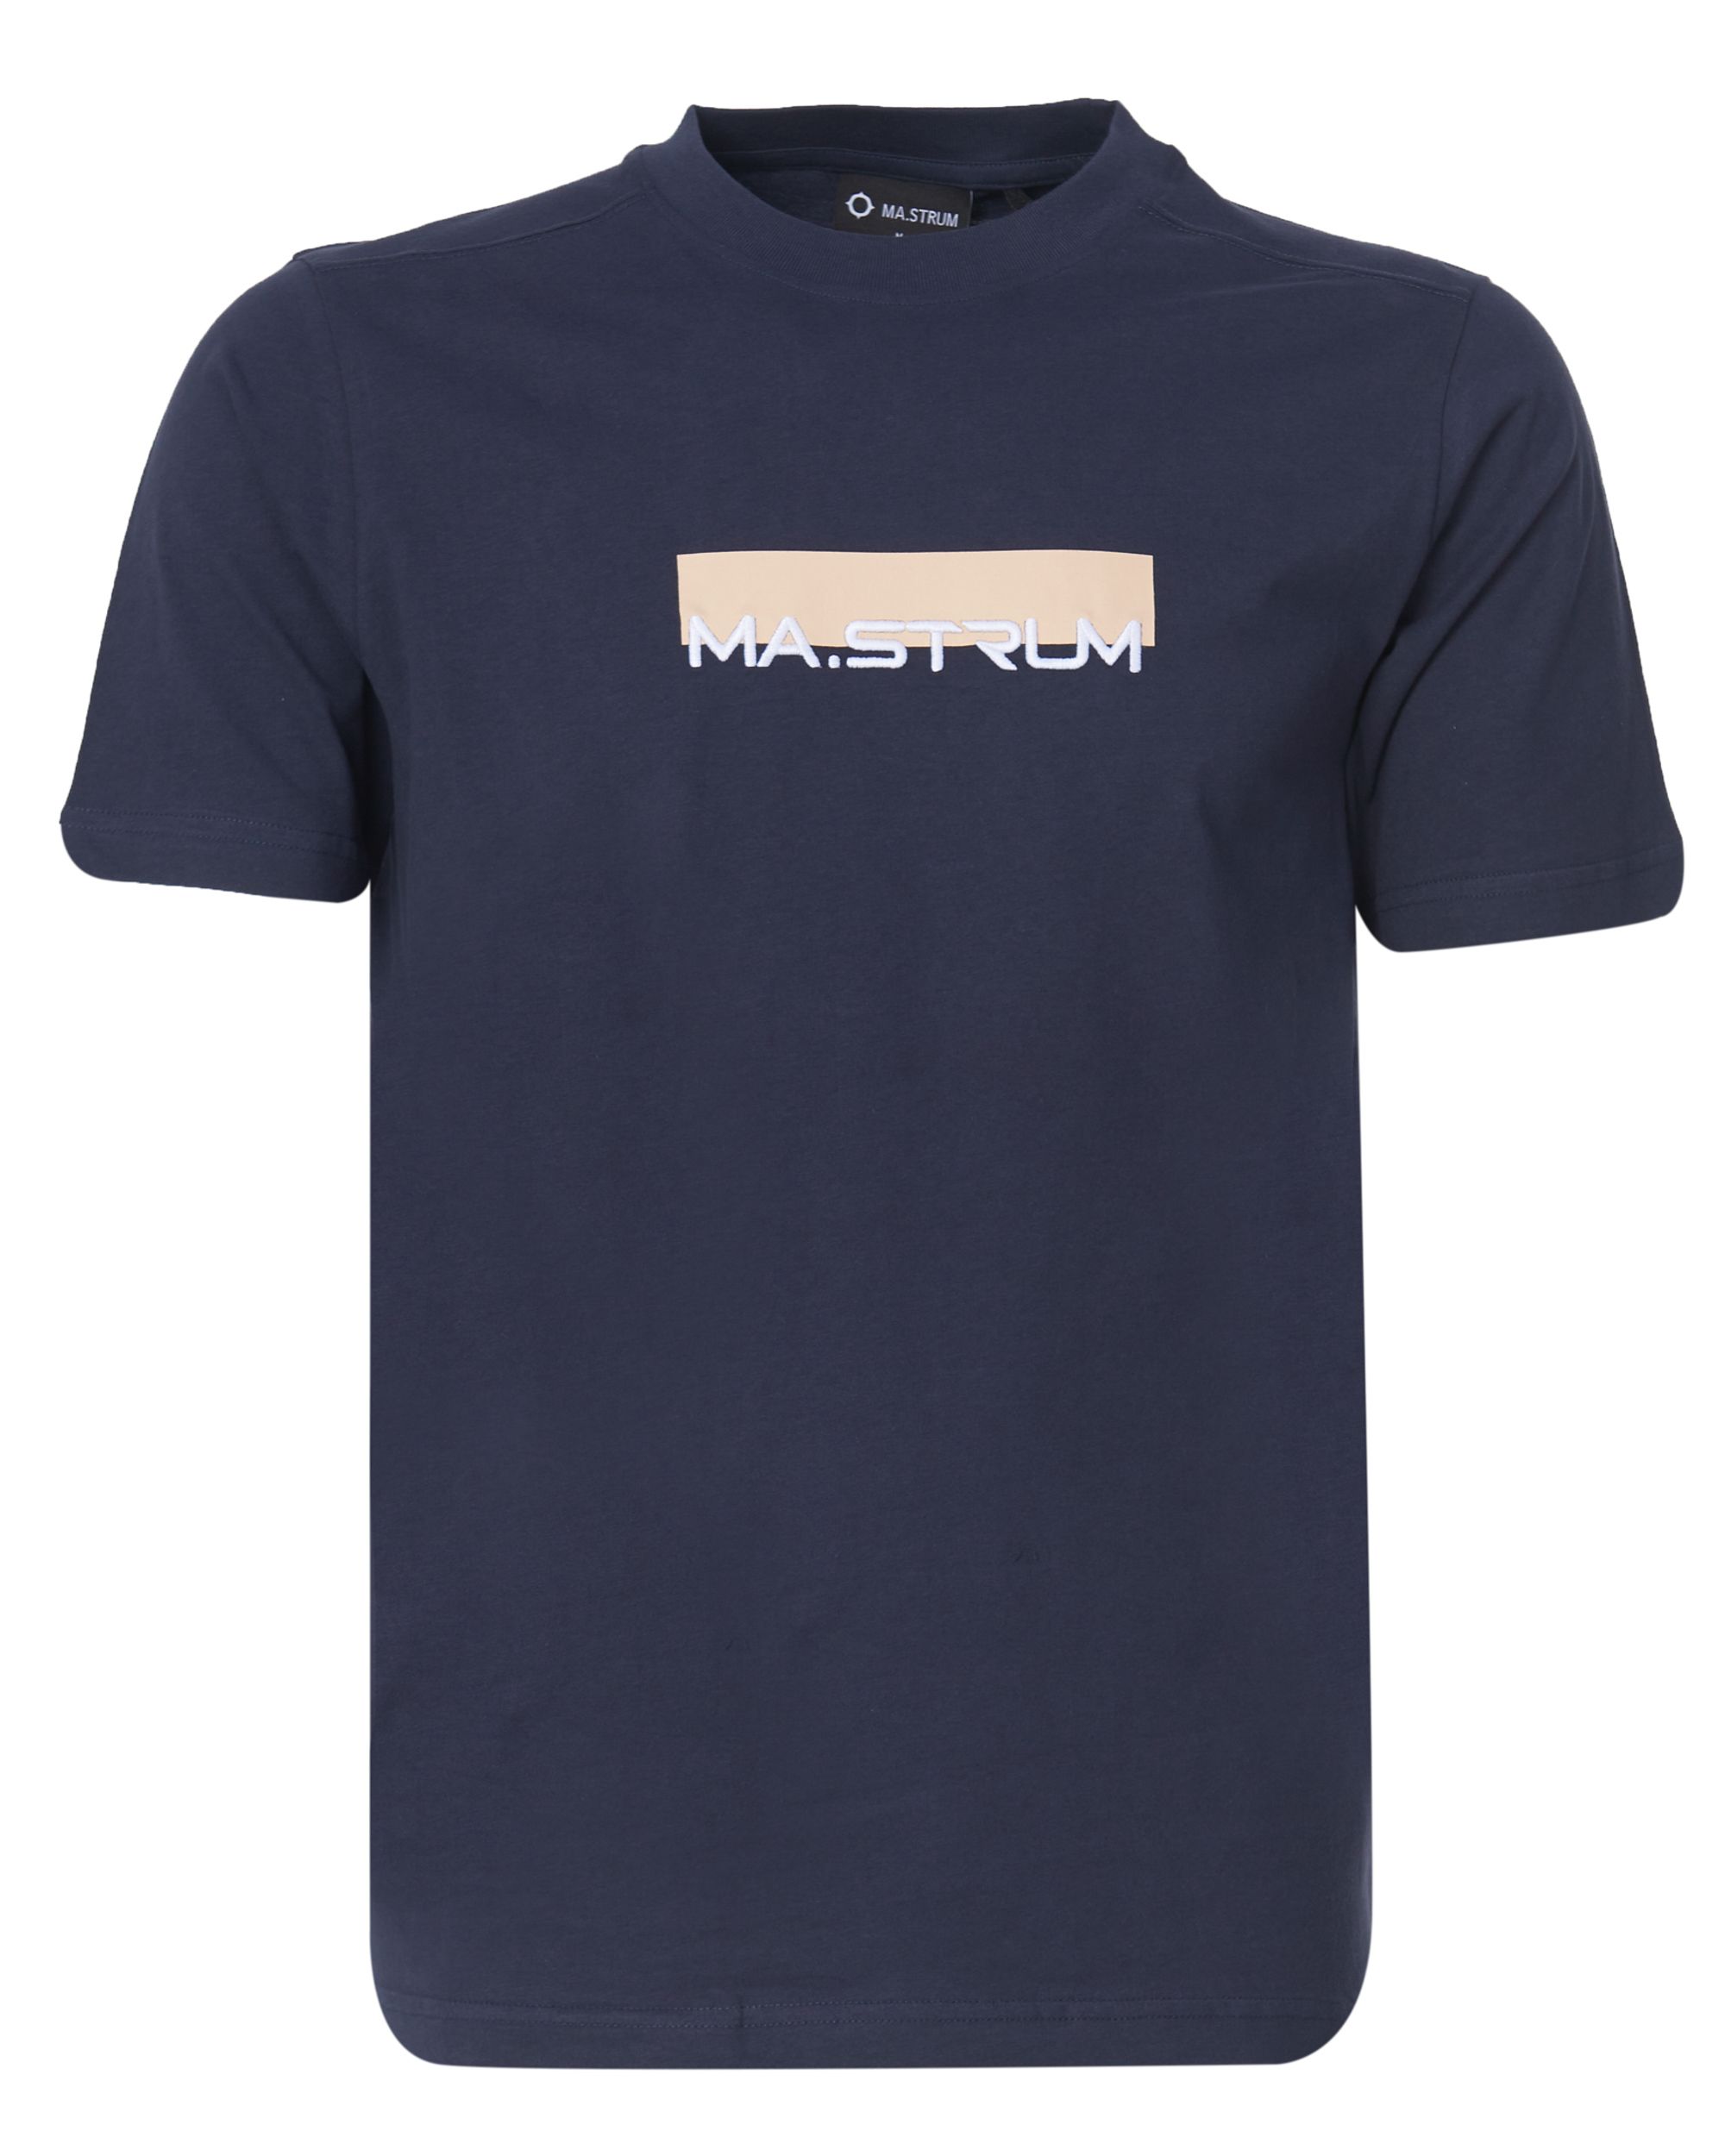 MA.STRUM T-shirt KM Donker blauw 081024-001-L